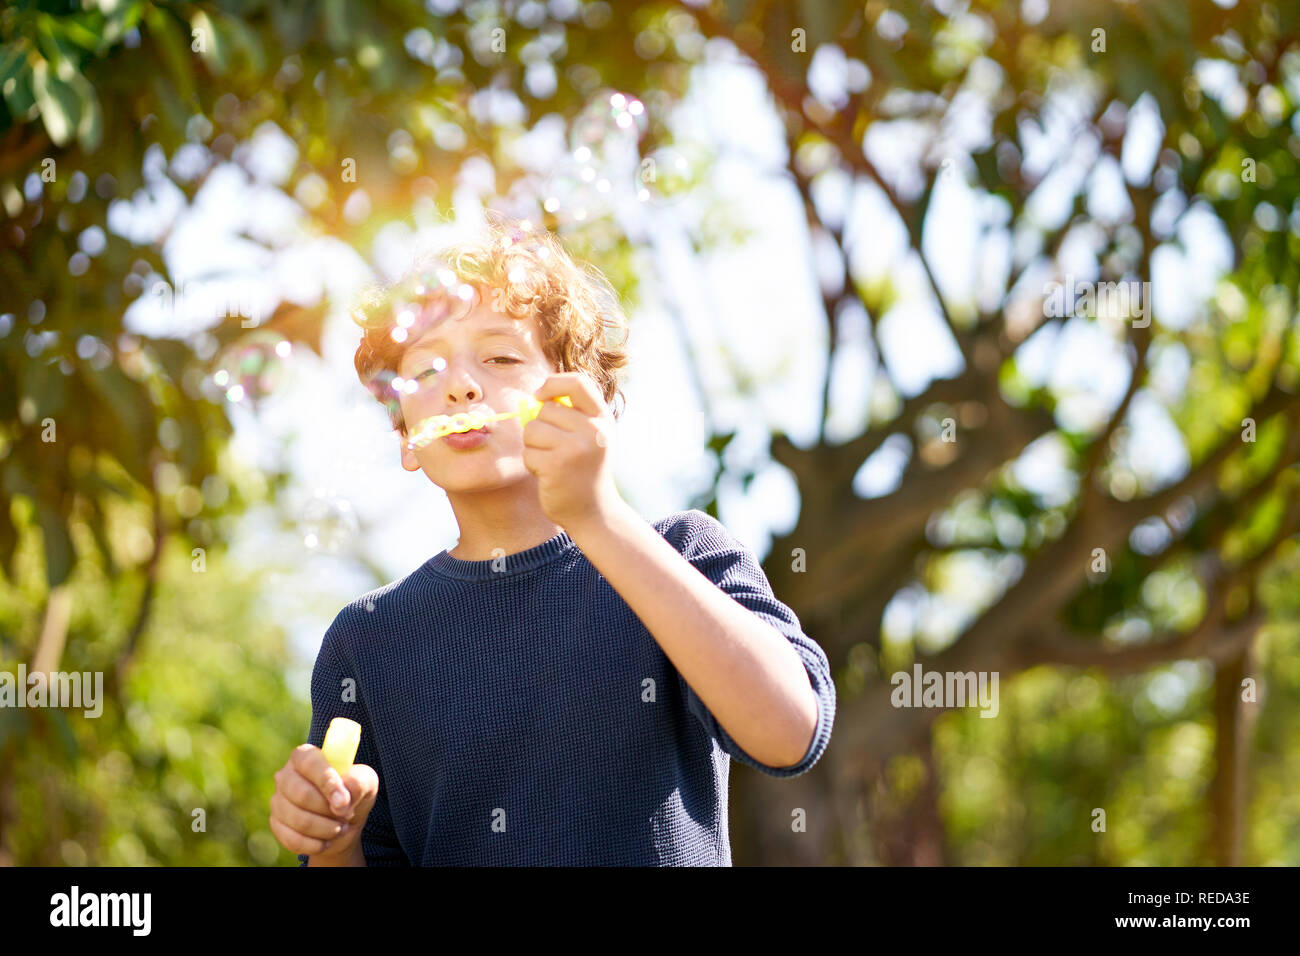 10 años chico italiano soplando burbujas de jabón al aire libre en el parque. Foto de stock